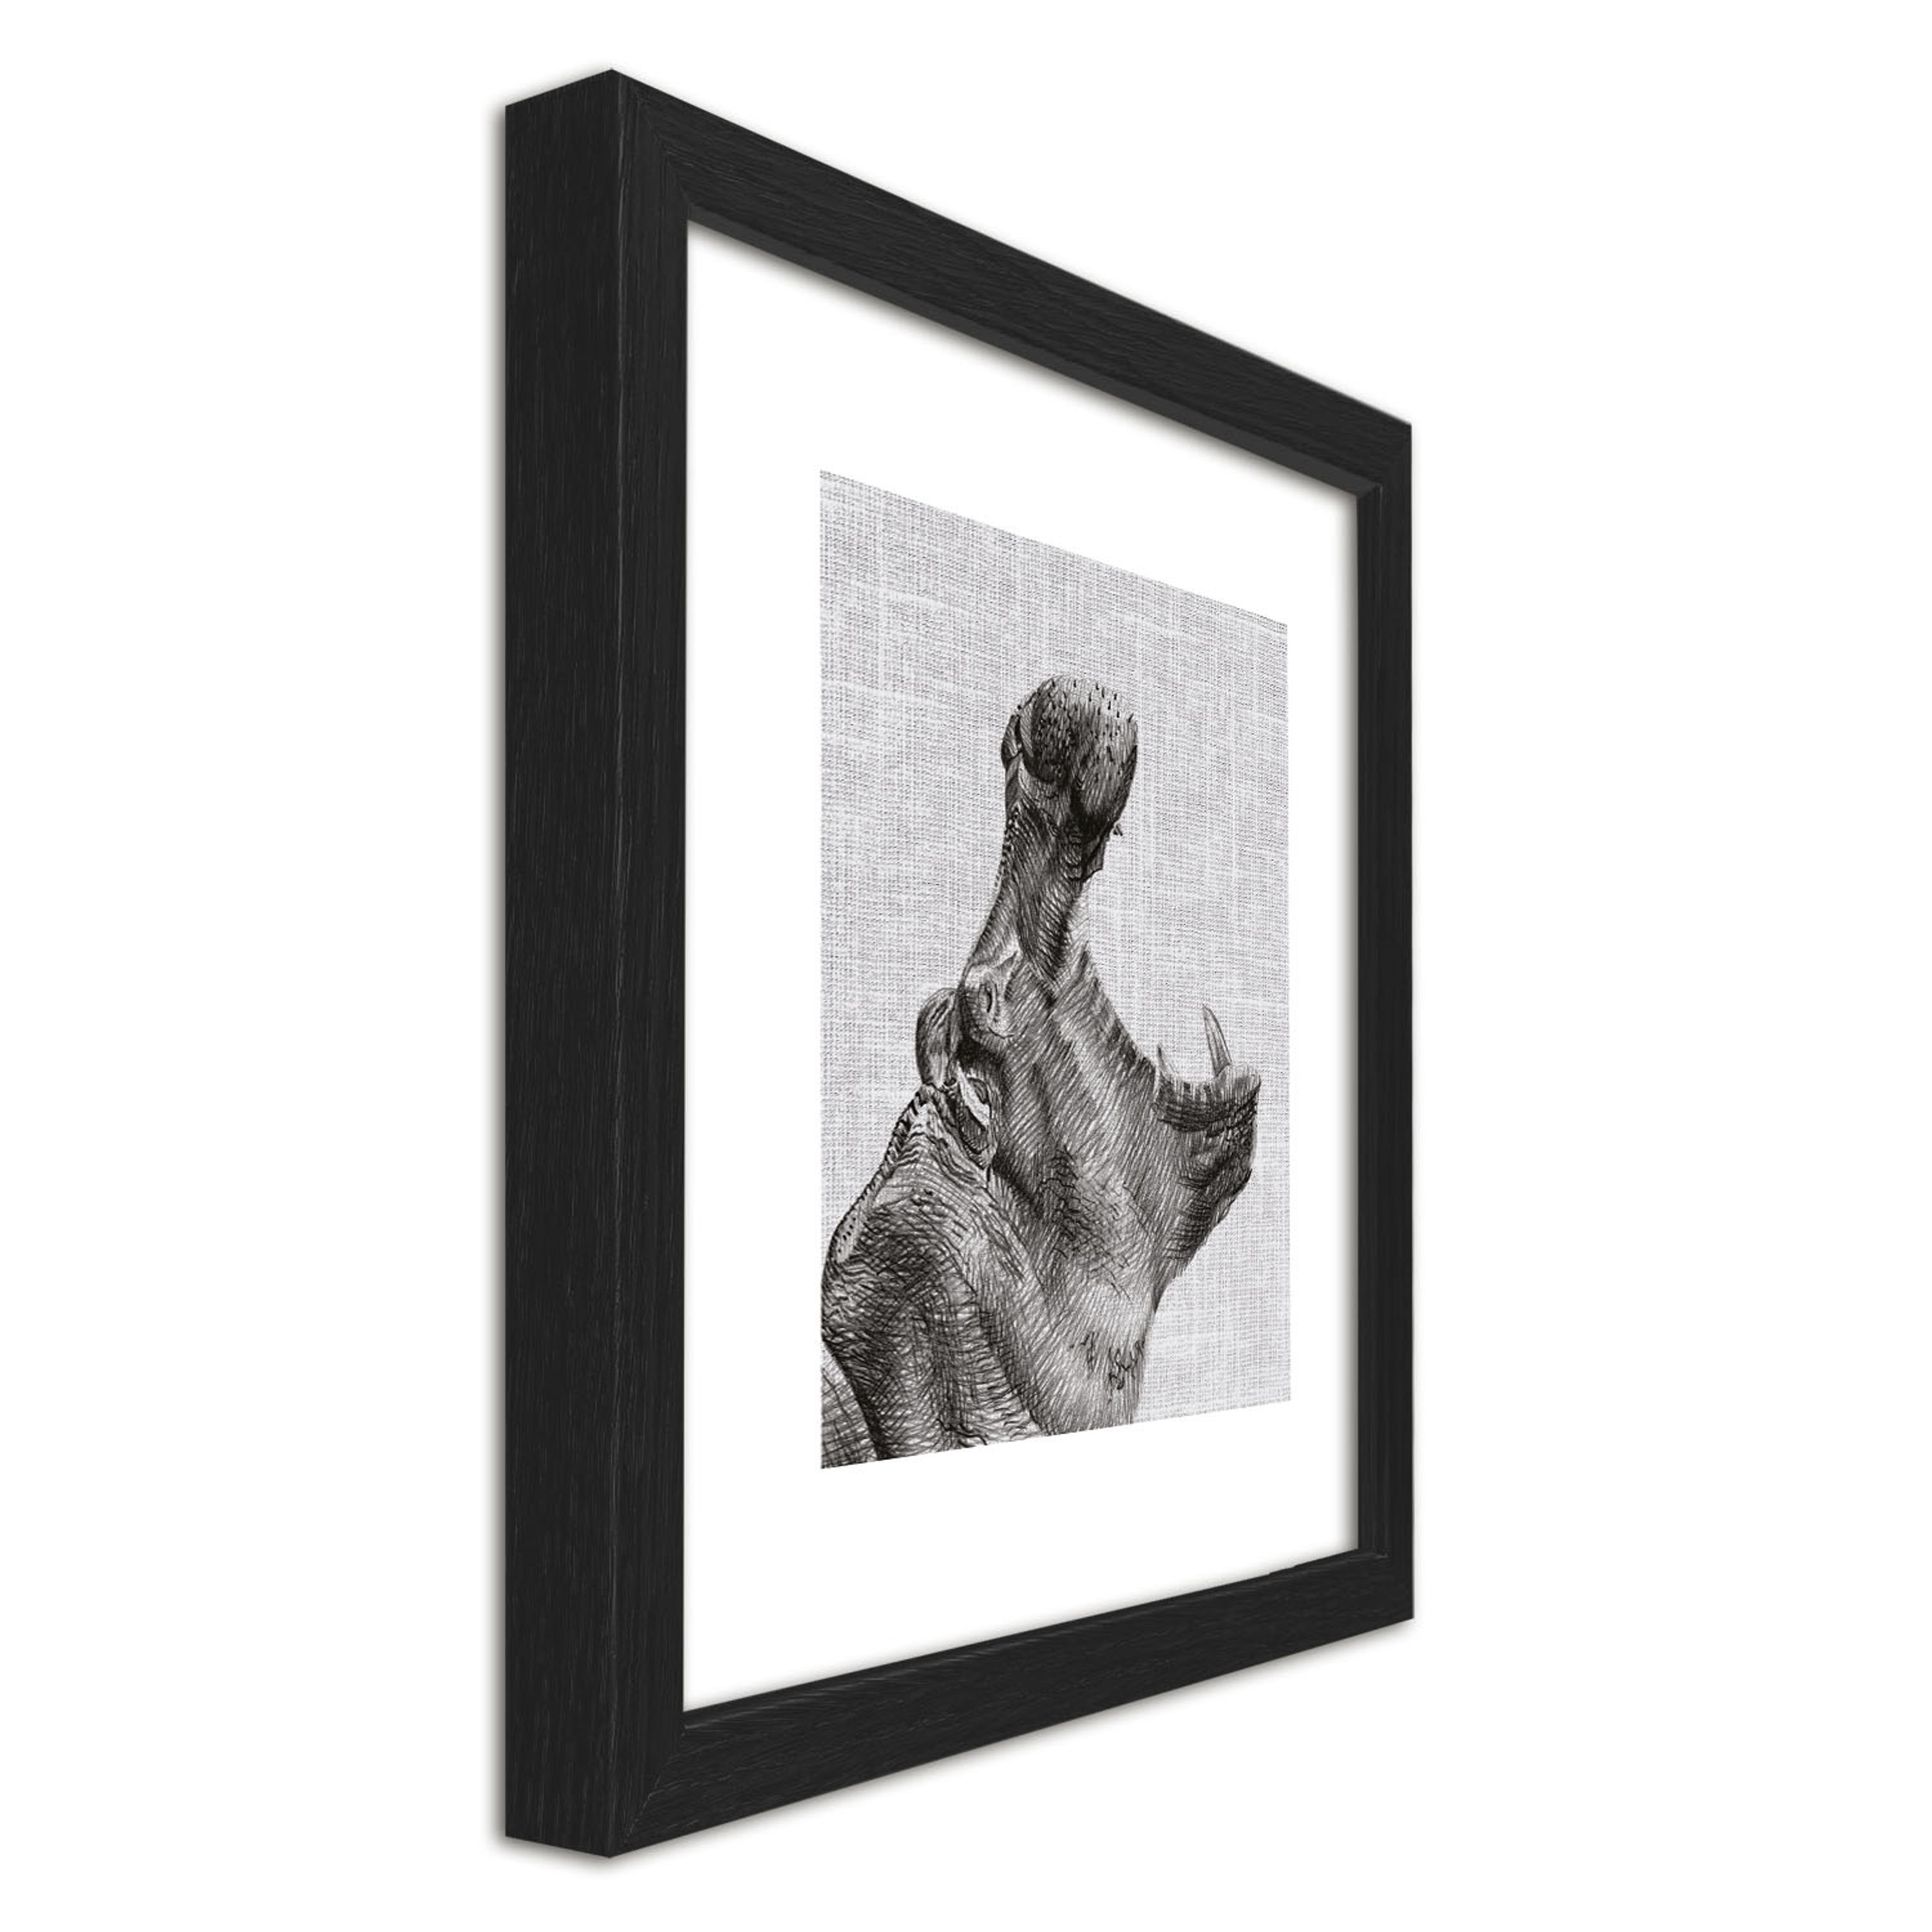 Holz-Rahmen Schwarz-Weiß Design-Poster / Wandbild, Bild Rahmen gerahmt Bild 30x30cm Nilpferd inkl. artissimo Zeichnung: mit /